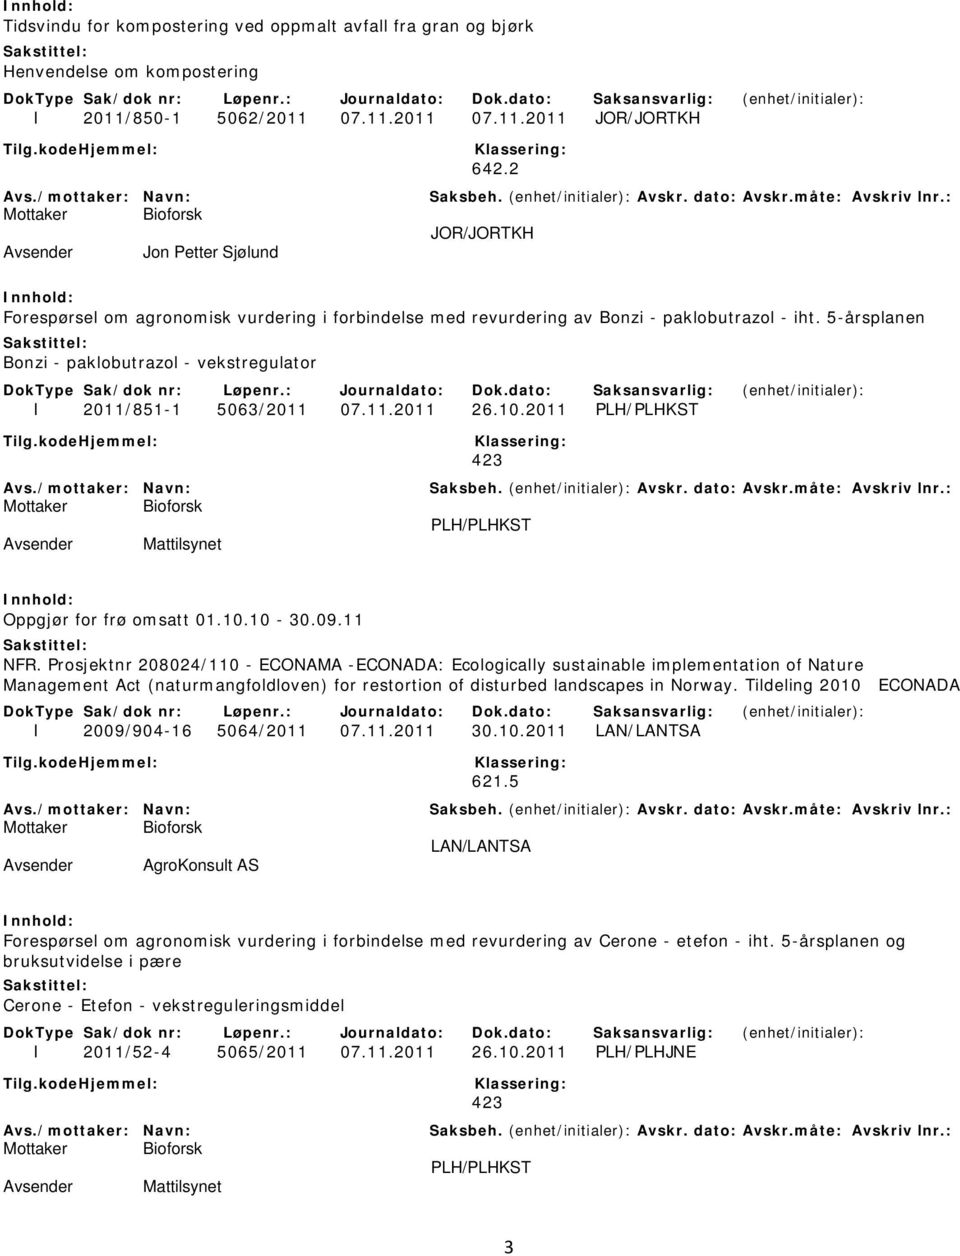 5-årsplanen Bonzi - paklobutrazol - vekstregulator I 2011/851-1 5063/2011 07.11.2011 26.10.2011 PLH/PLHKST 423 PLH/PLHKST Mattilsynet Oppgjør for frø omsatt 01.10.10-30.09.11 NFR.